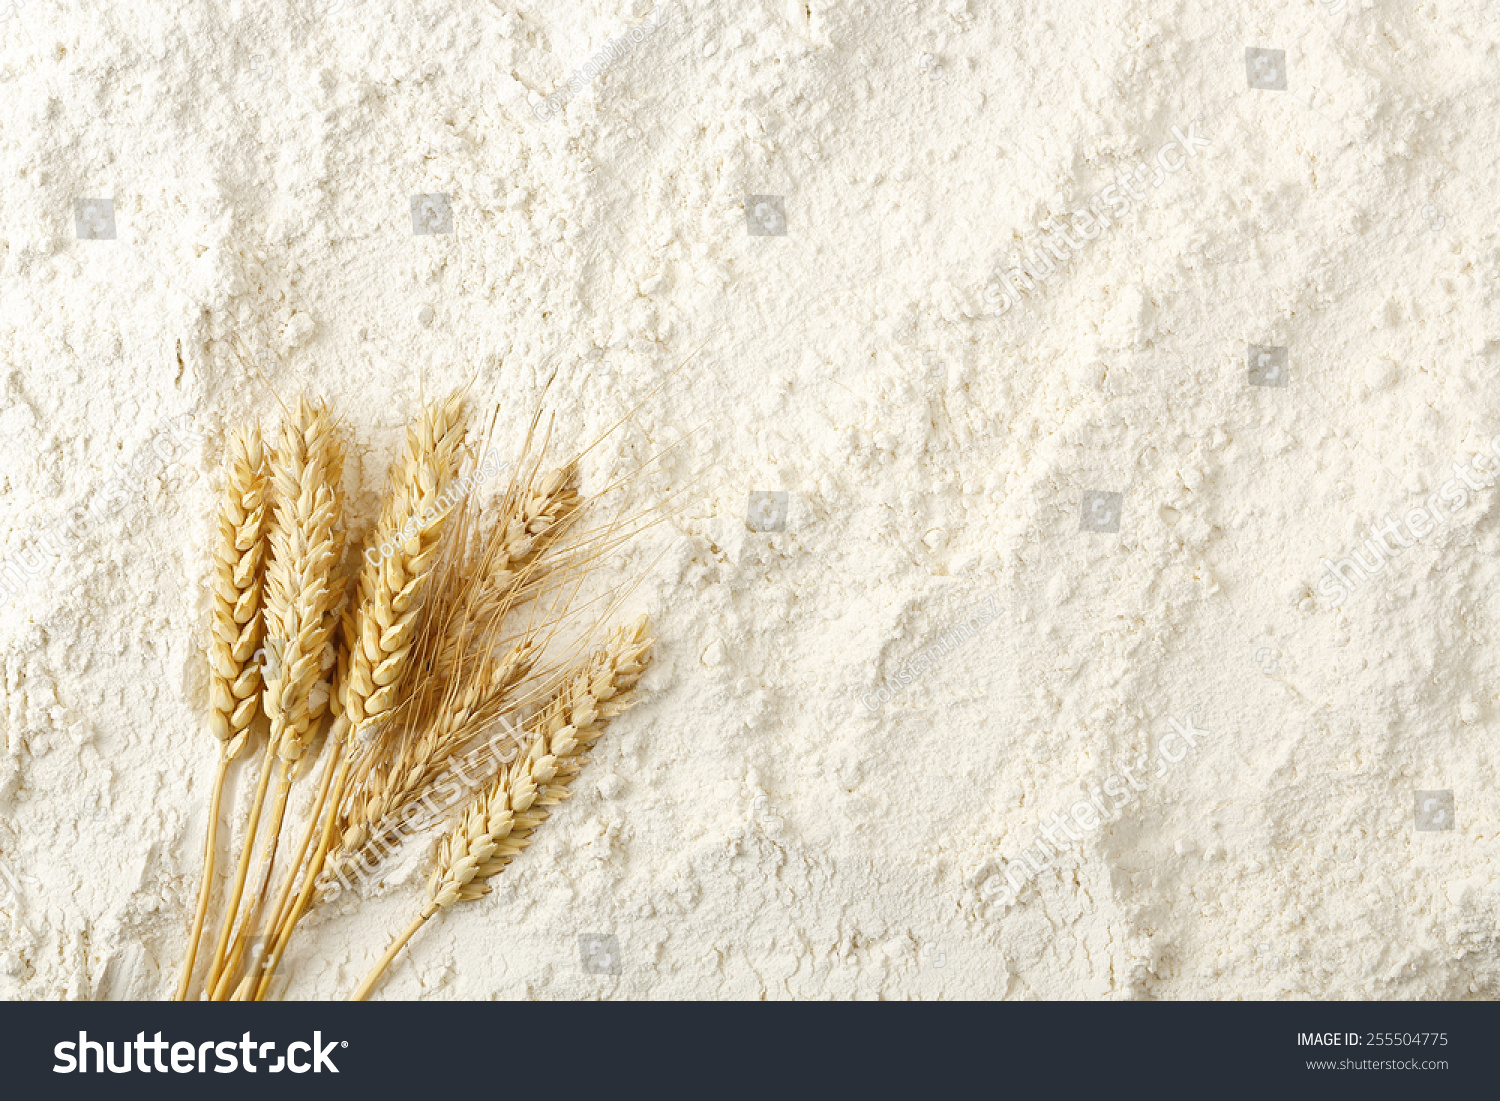 wheat ears on flour surface, full frame #255504775